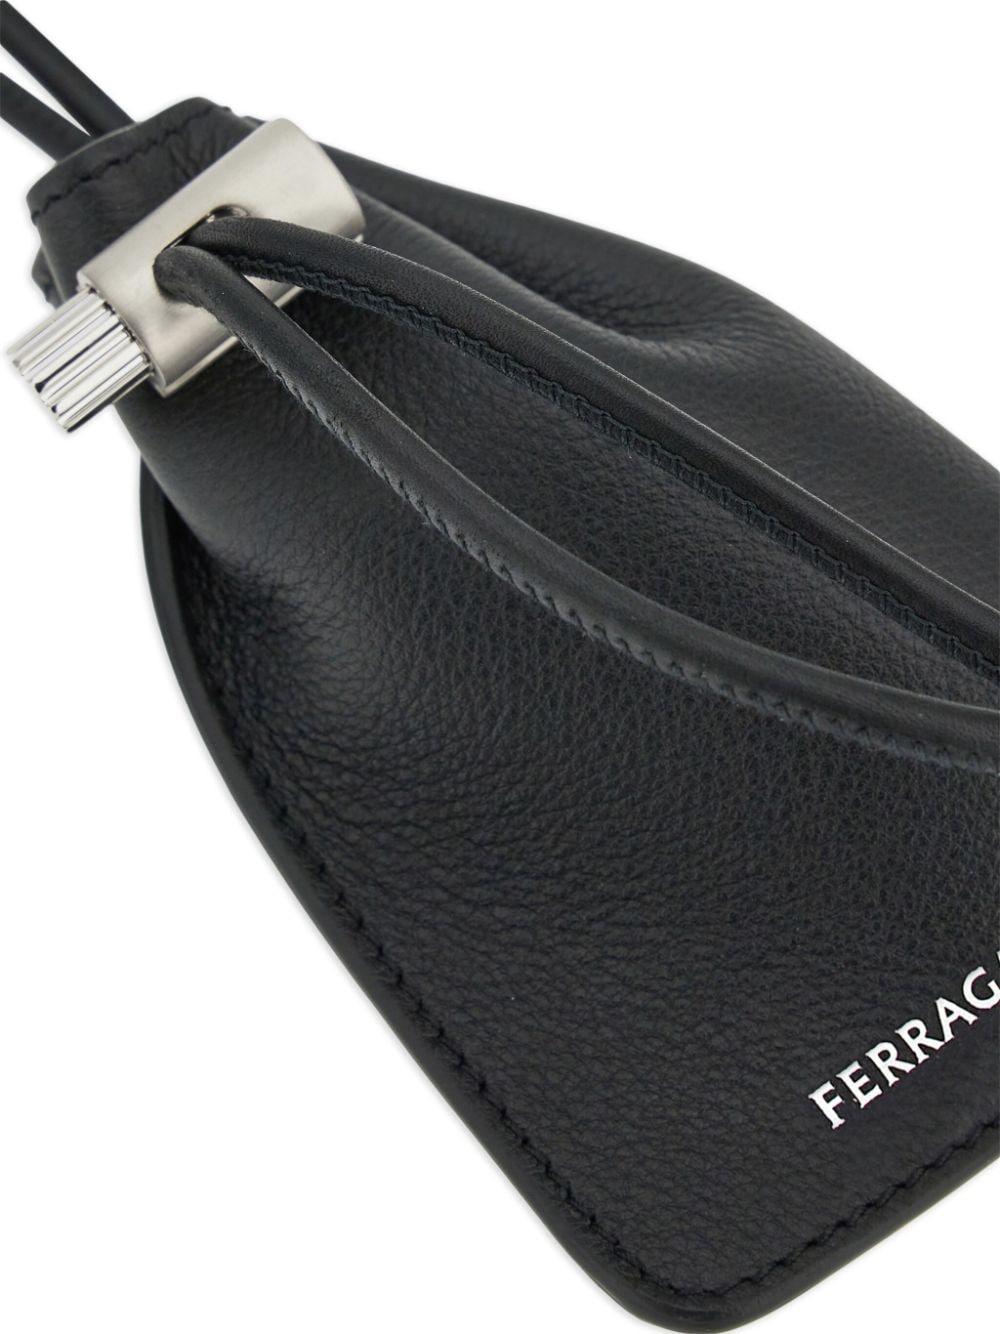 Ferragamo Belt Bags for Men - Shop Now on FARFETCH